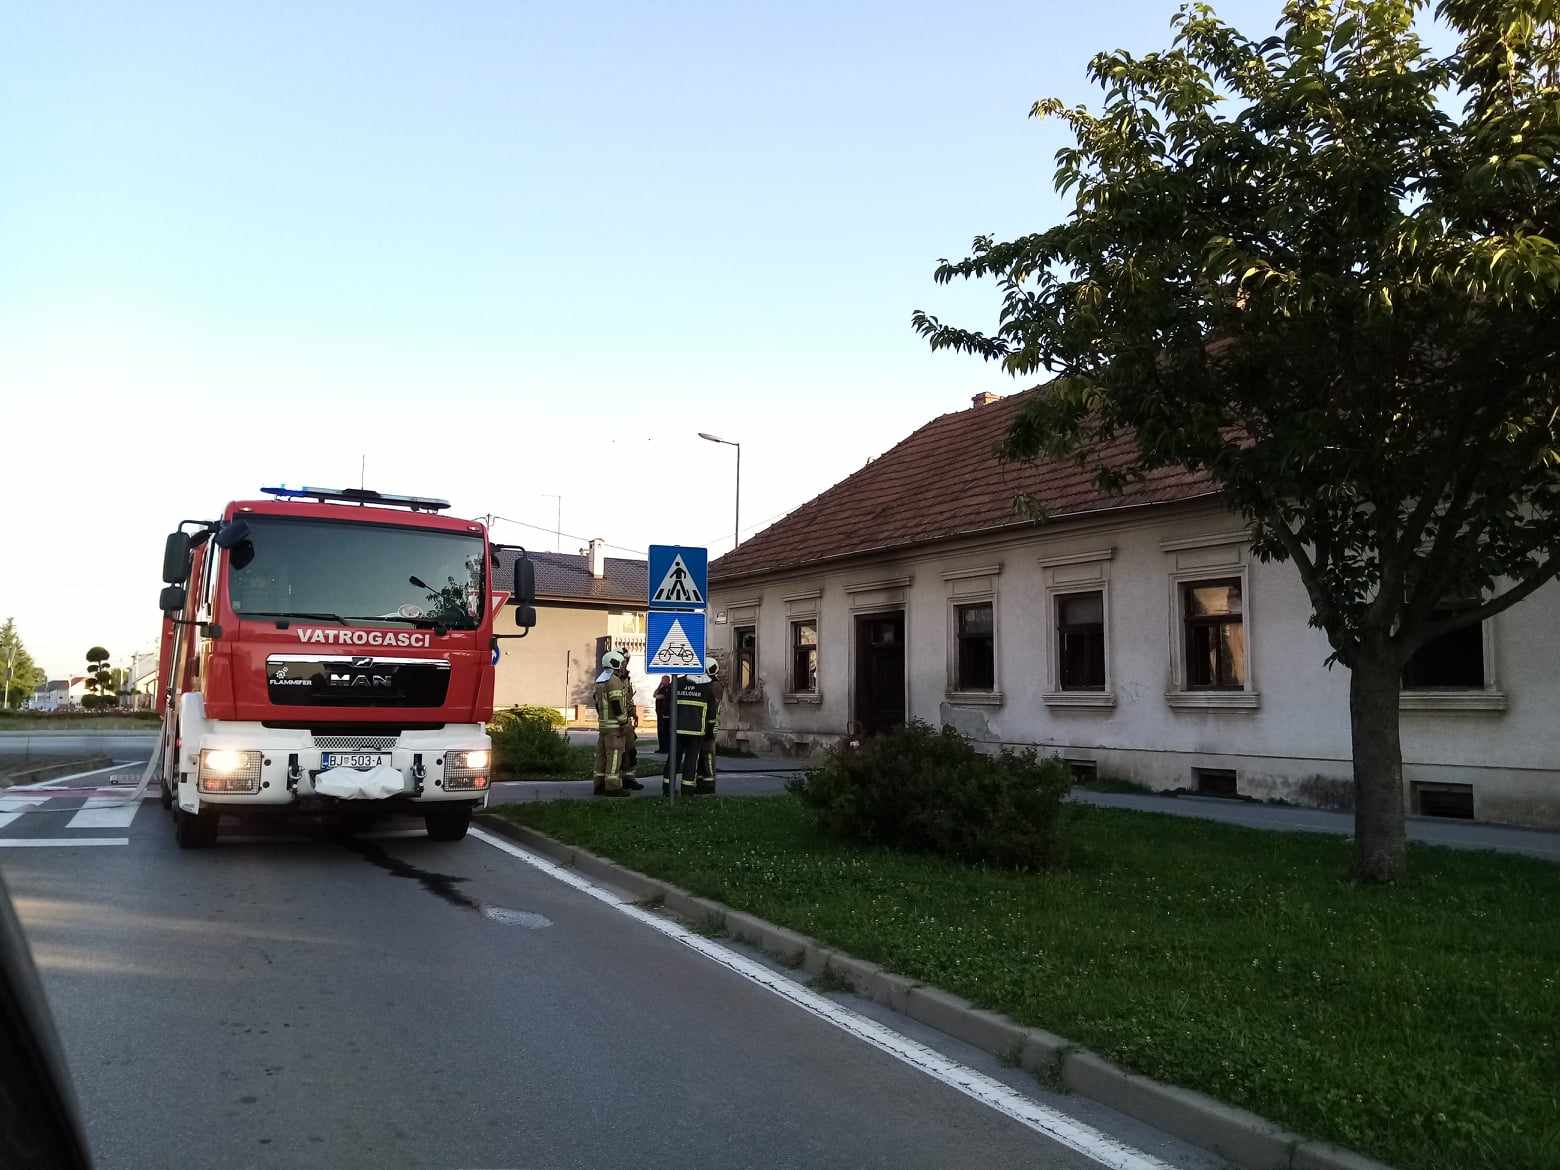 Bjelovarski vatrogasci gase požar na obiteljskoj kući u Hebrangovoj